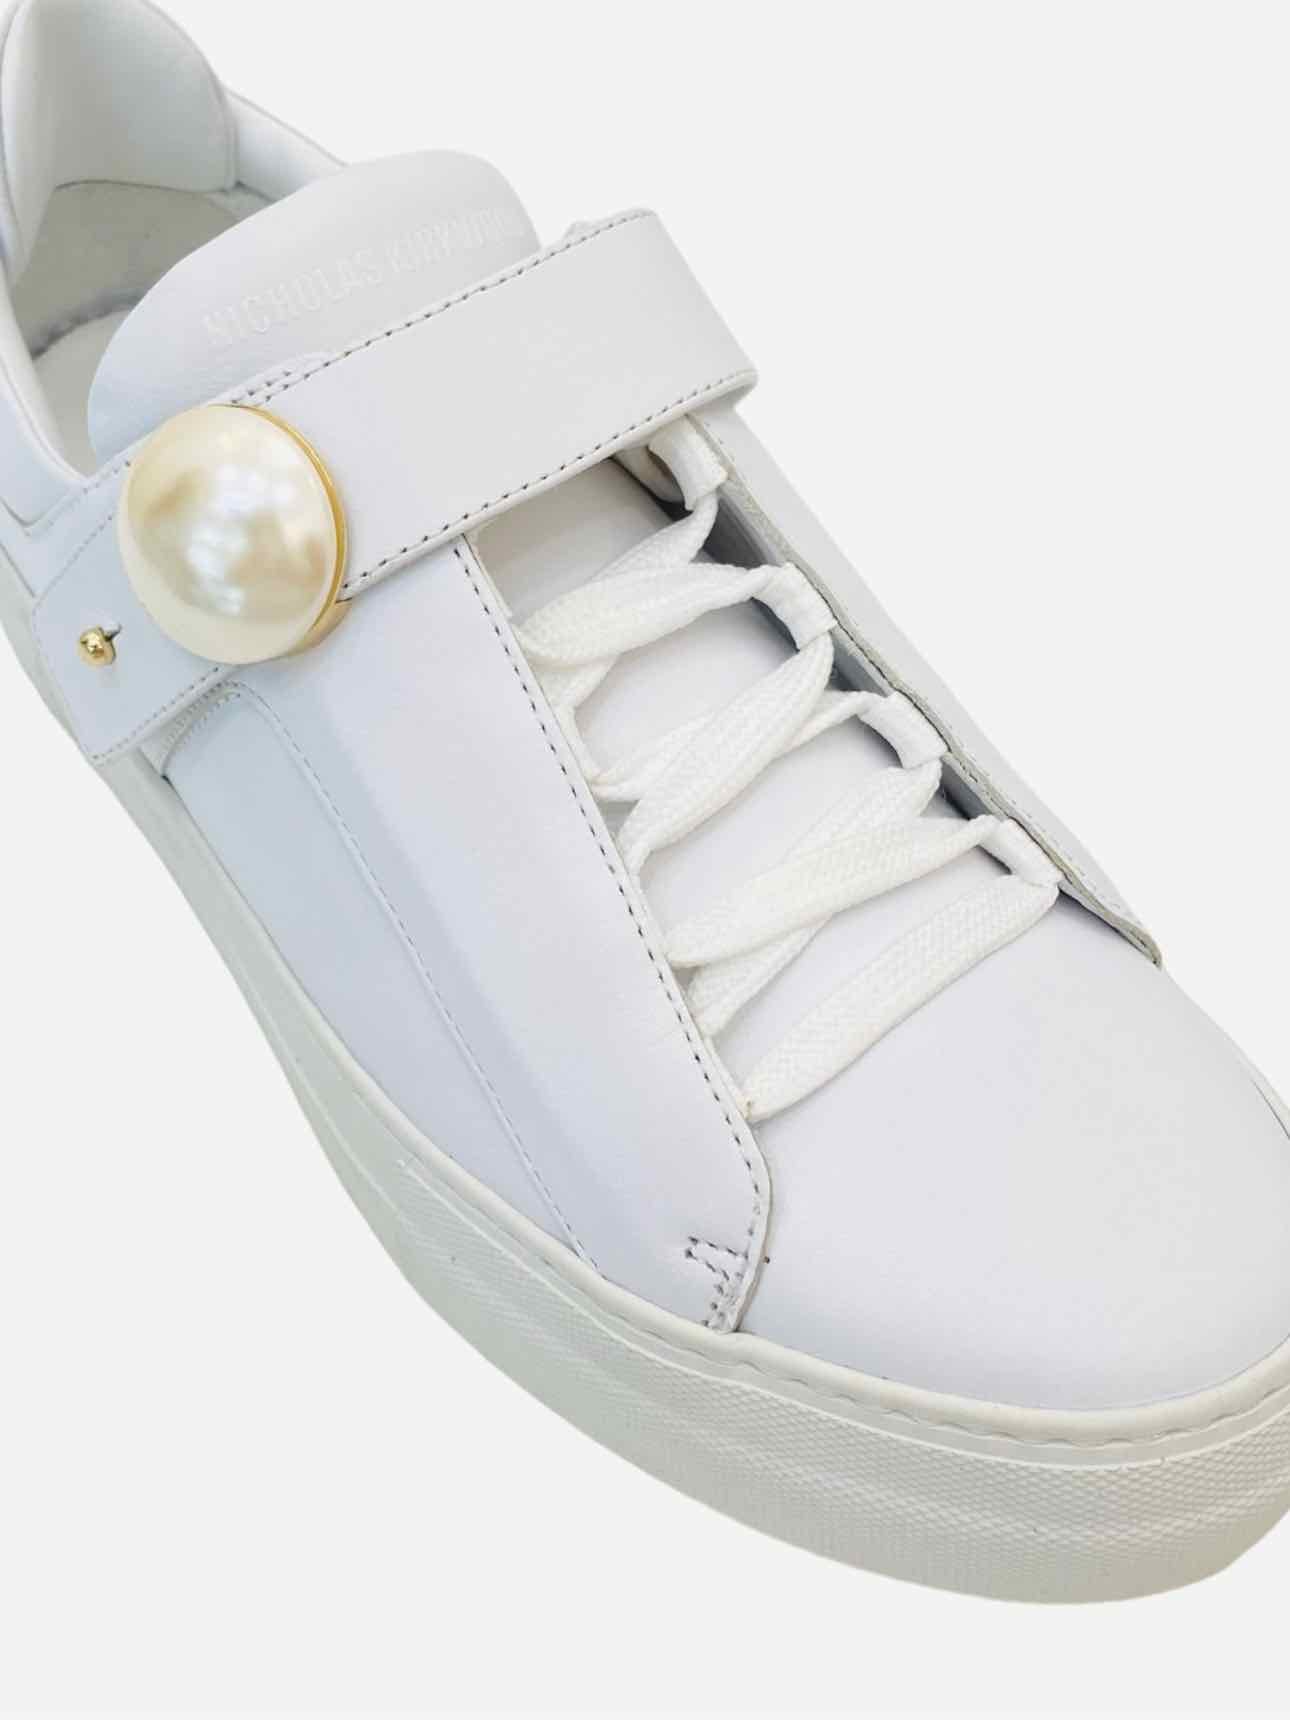 Pre-loved NICHOLAS KIRKWOOD Pearlogy White Sneakers - Reems Closet